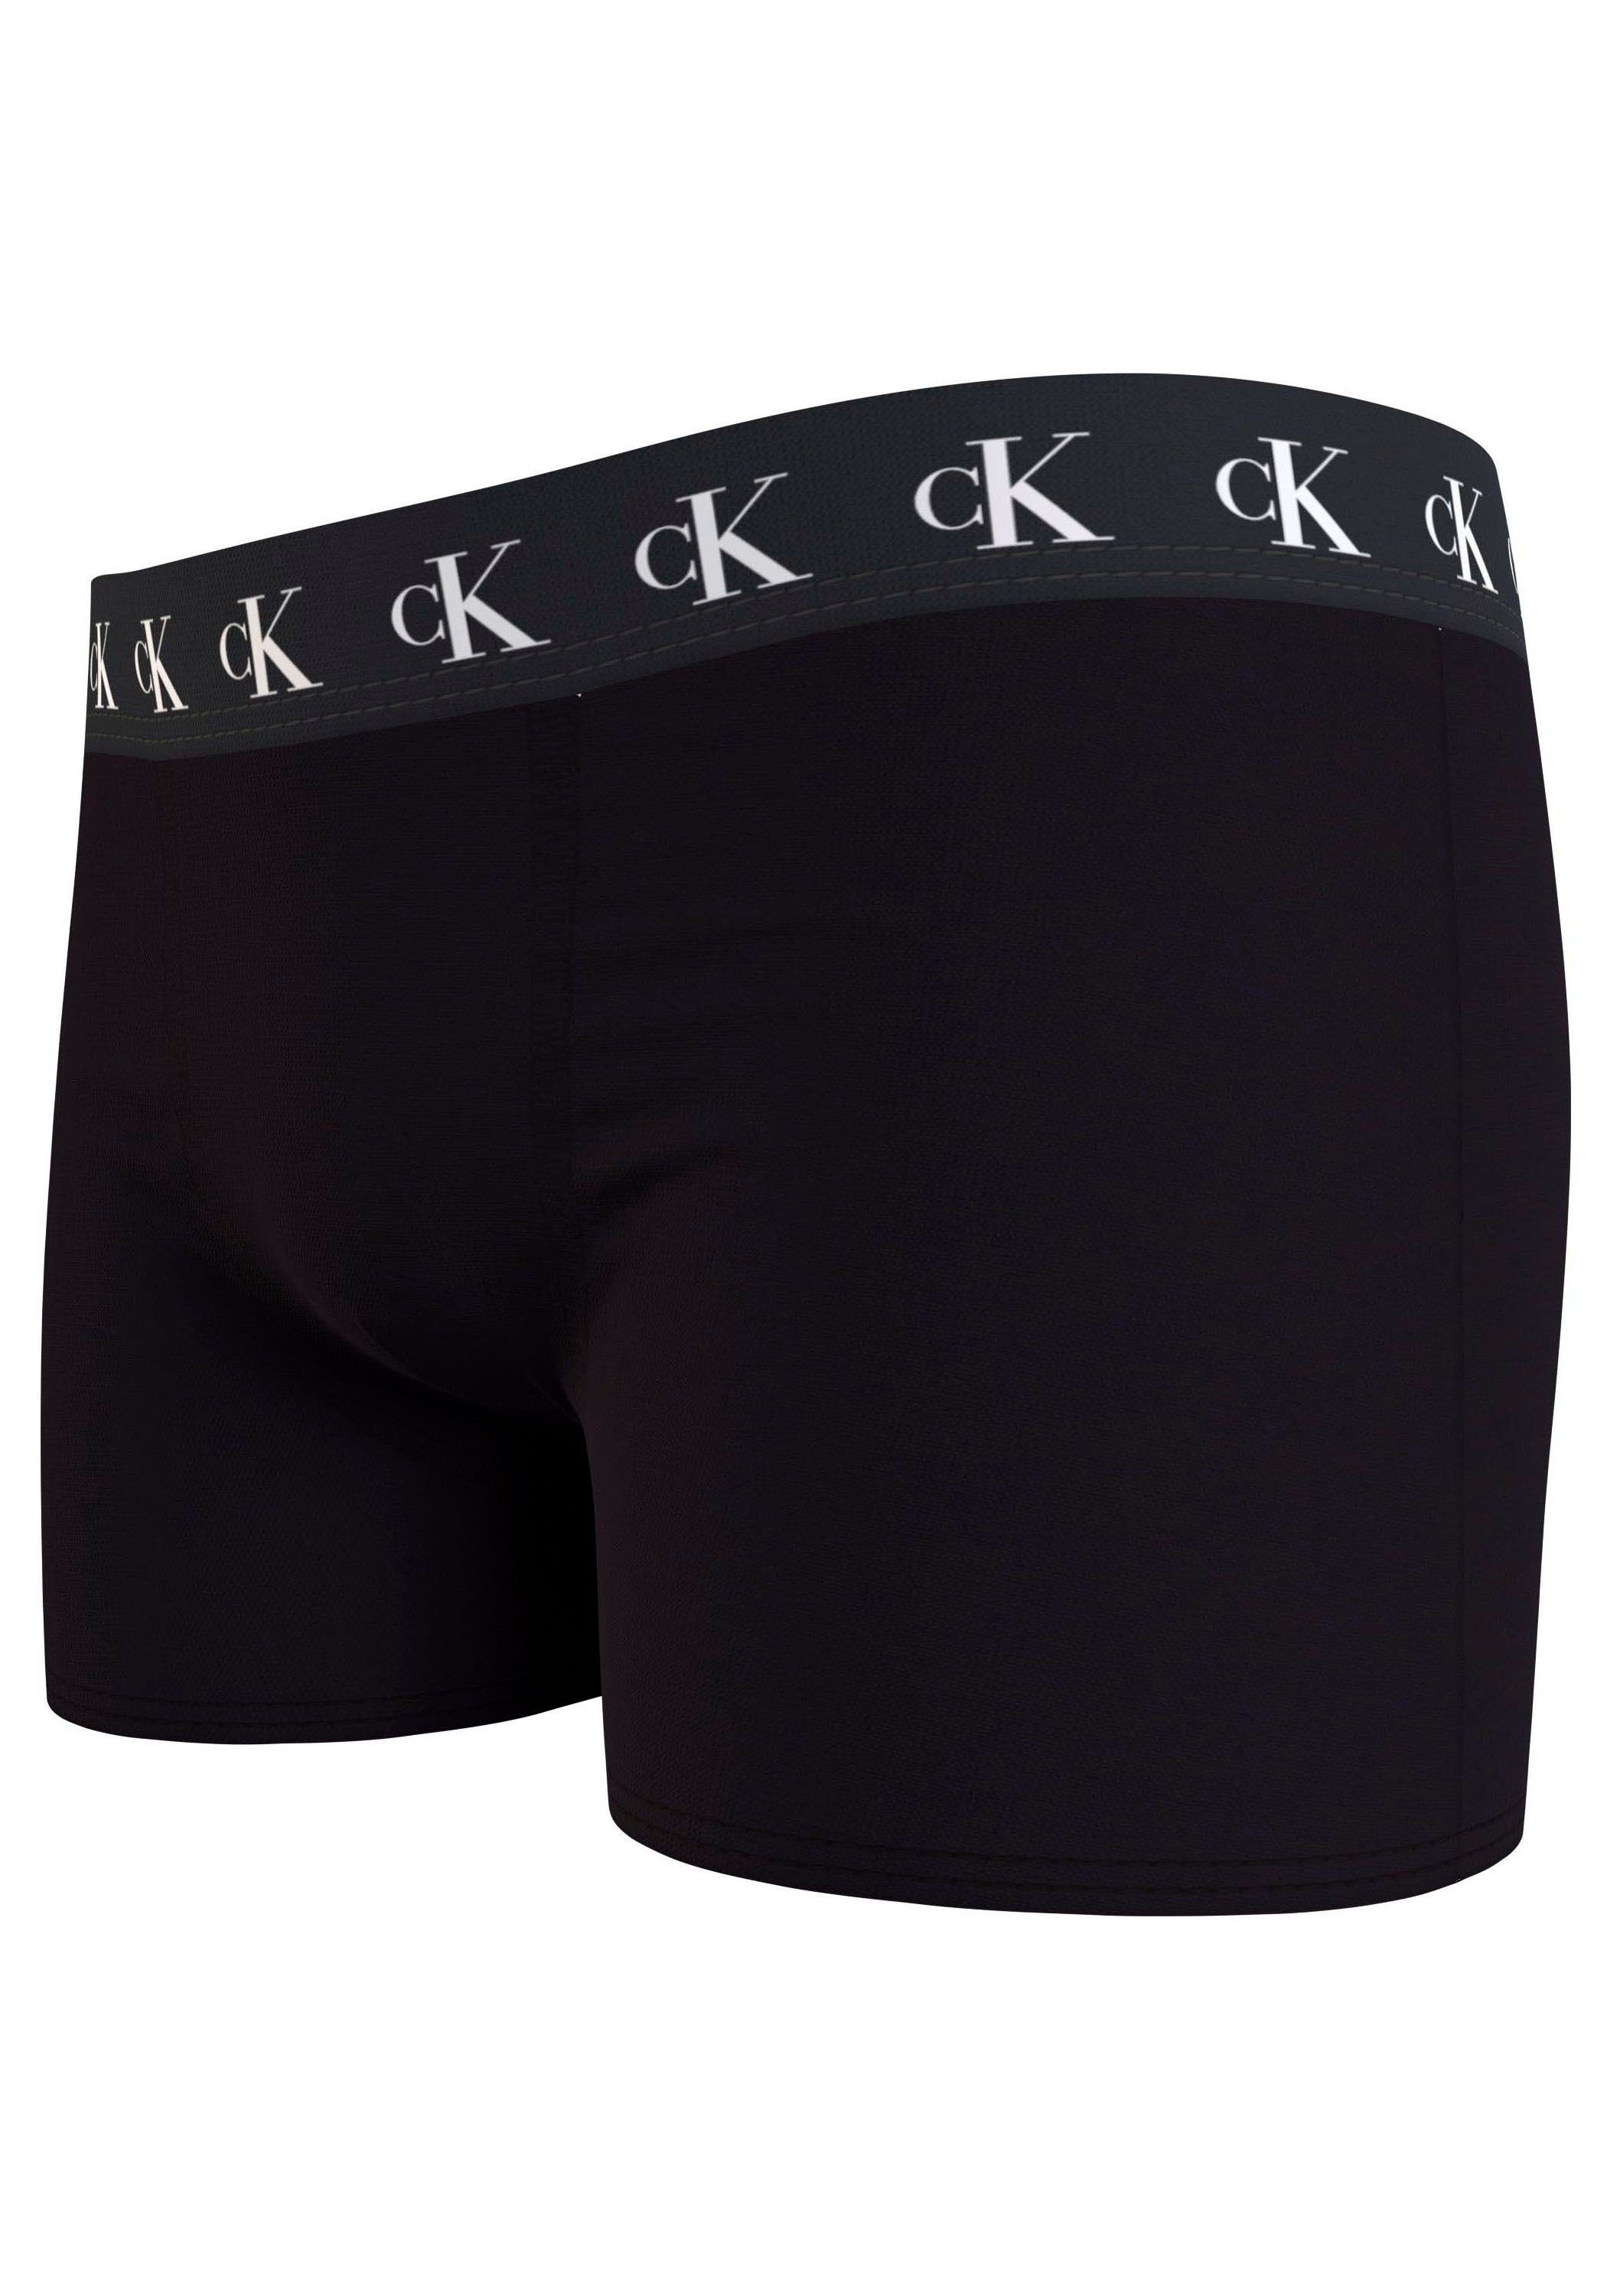 TRUNK am (Packung, Calvin Klein 3PK Bund Markenlabel mit Tarpsblue/Pvhwhite/Pvhblack Klein Slip Calvin 3er-Pack) Underwear